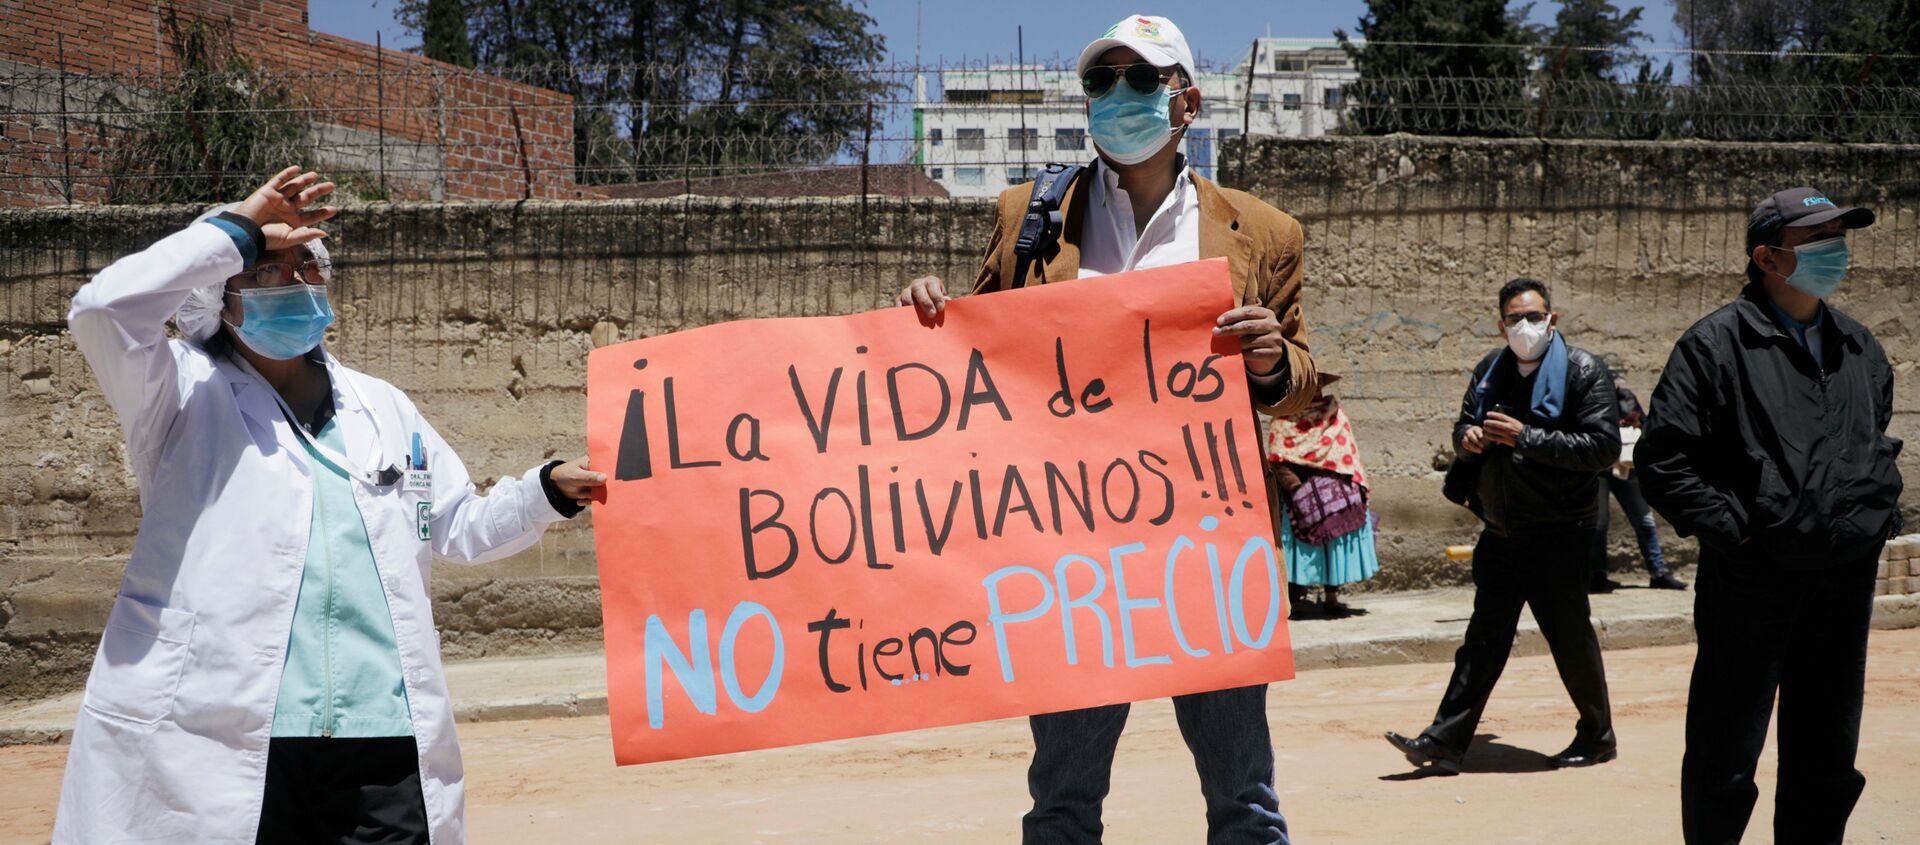 Una protesta de los médicos en Bolivia (archivo) - Sputnik Mundo, 1920, 04.02.2021